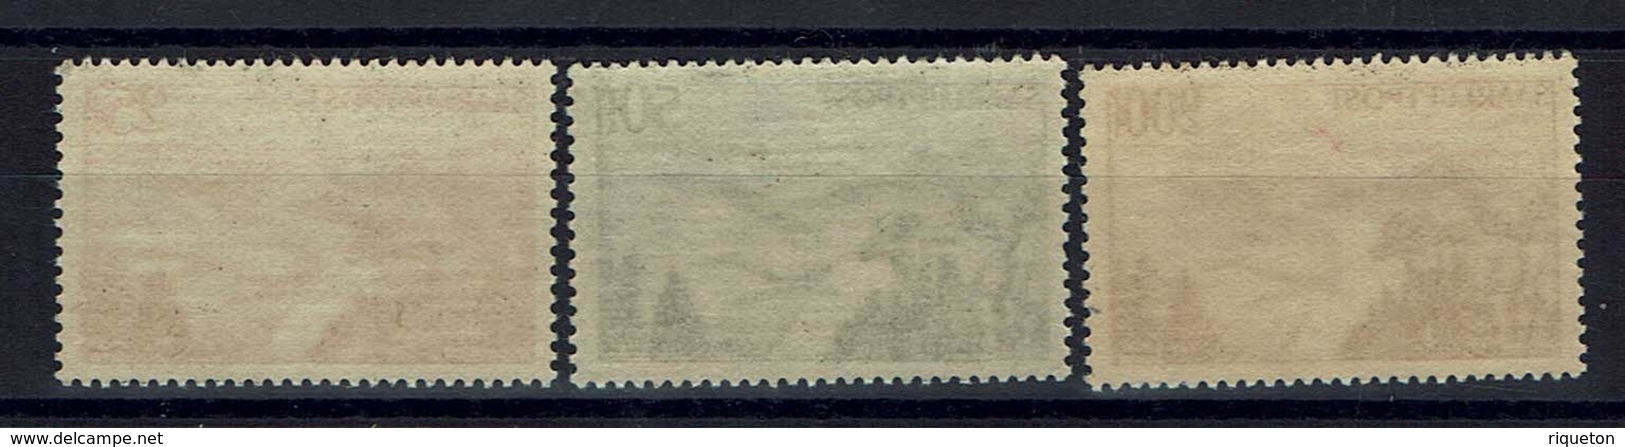 Sarre - 1948 - Poste Aérienne N° 9-11 - Neufs Sans Charnières - XX - MNH - TB - - Airmail